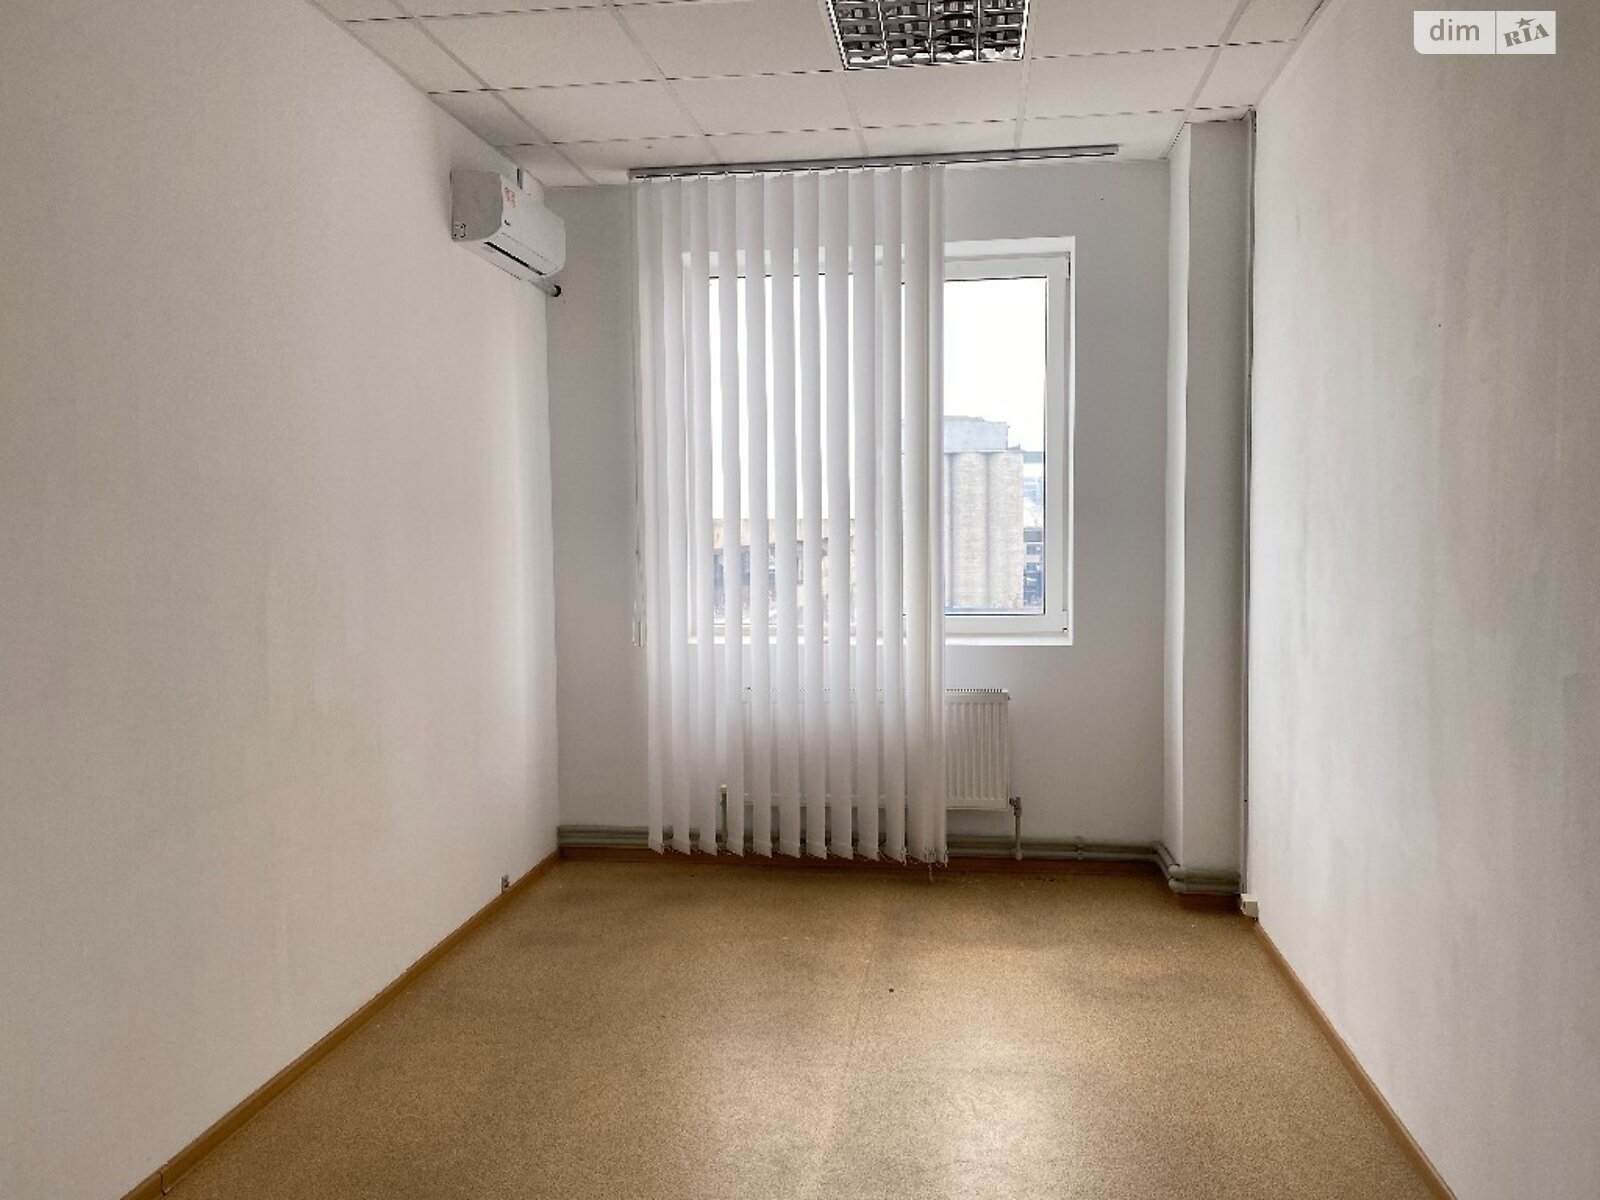 Аренда офисного помещения в Днепре, Ольги княгини улица 22, помещений - 1, этаж - 7 фото 1